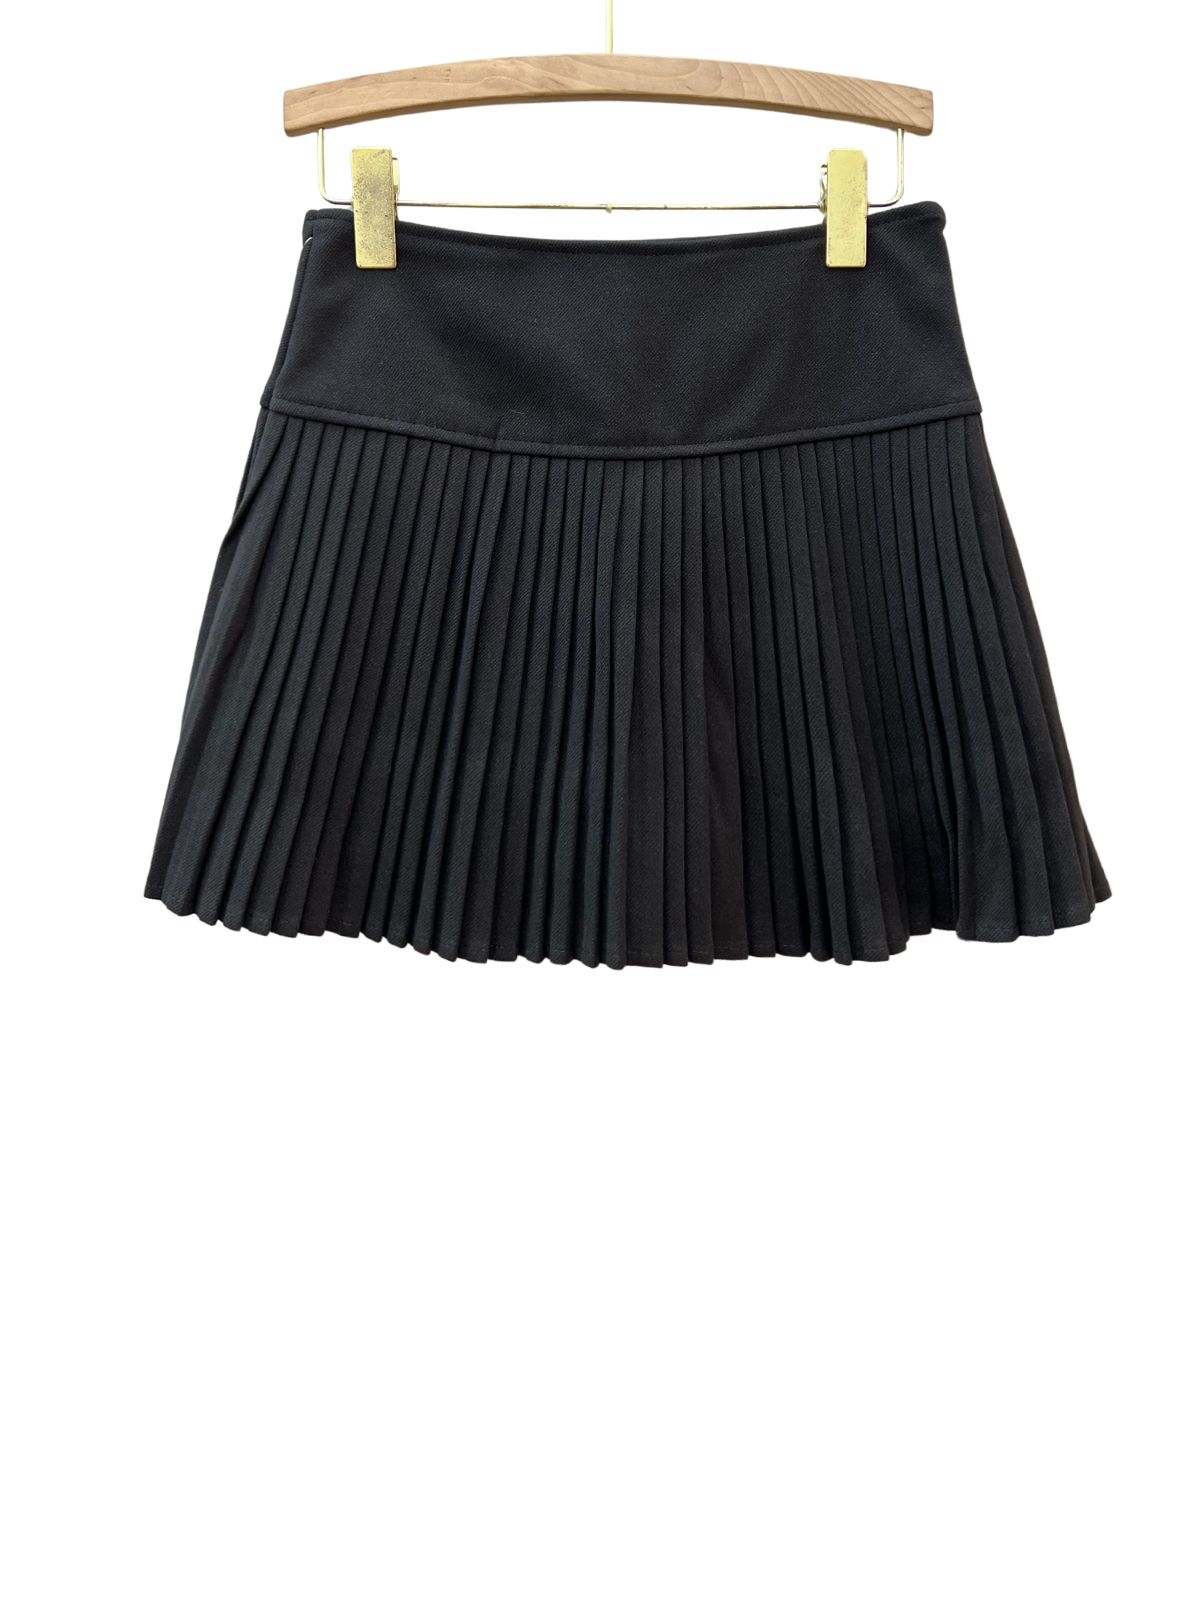 Chân váy xếp ly ngắn dáng tennis chữ a xòe màu đen nâu có quần nót trong